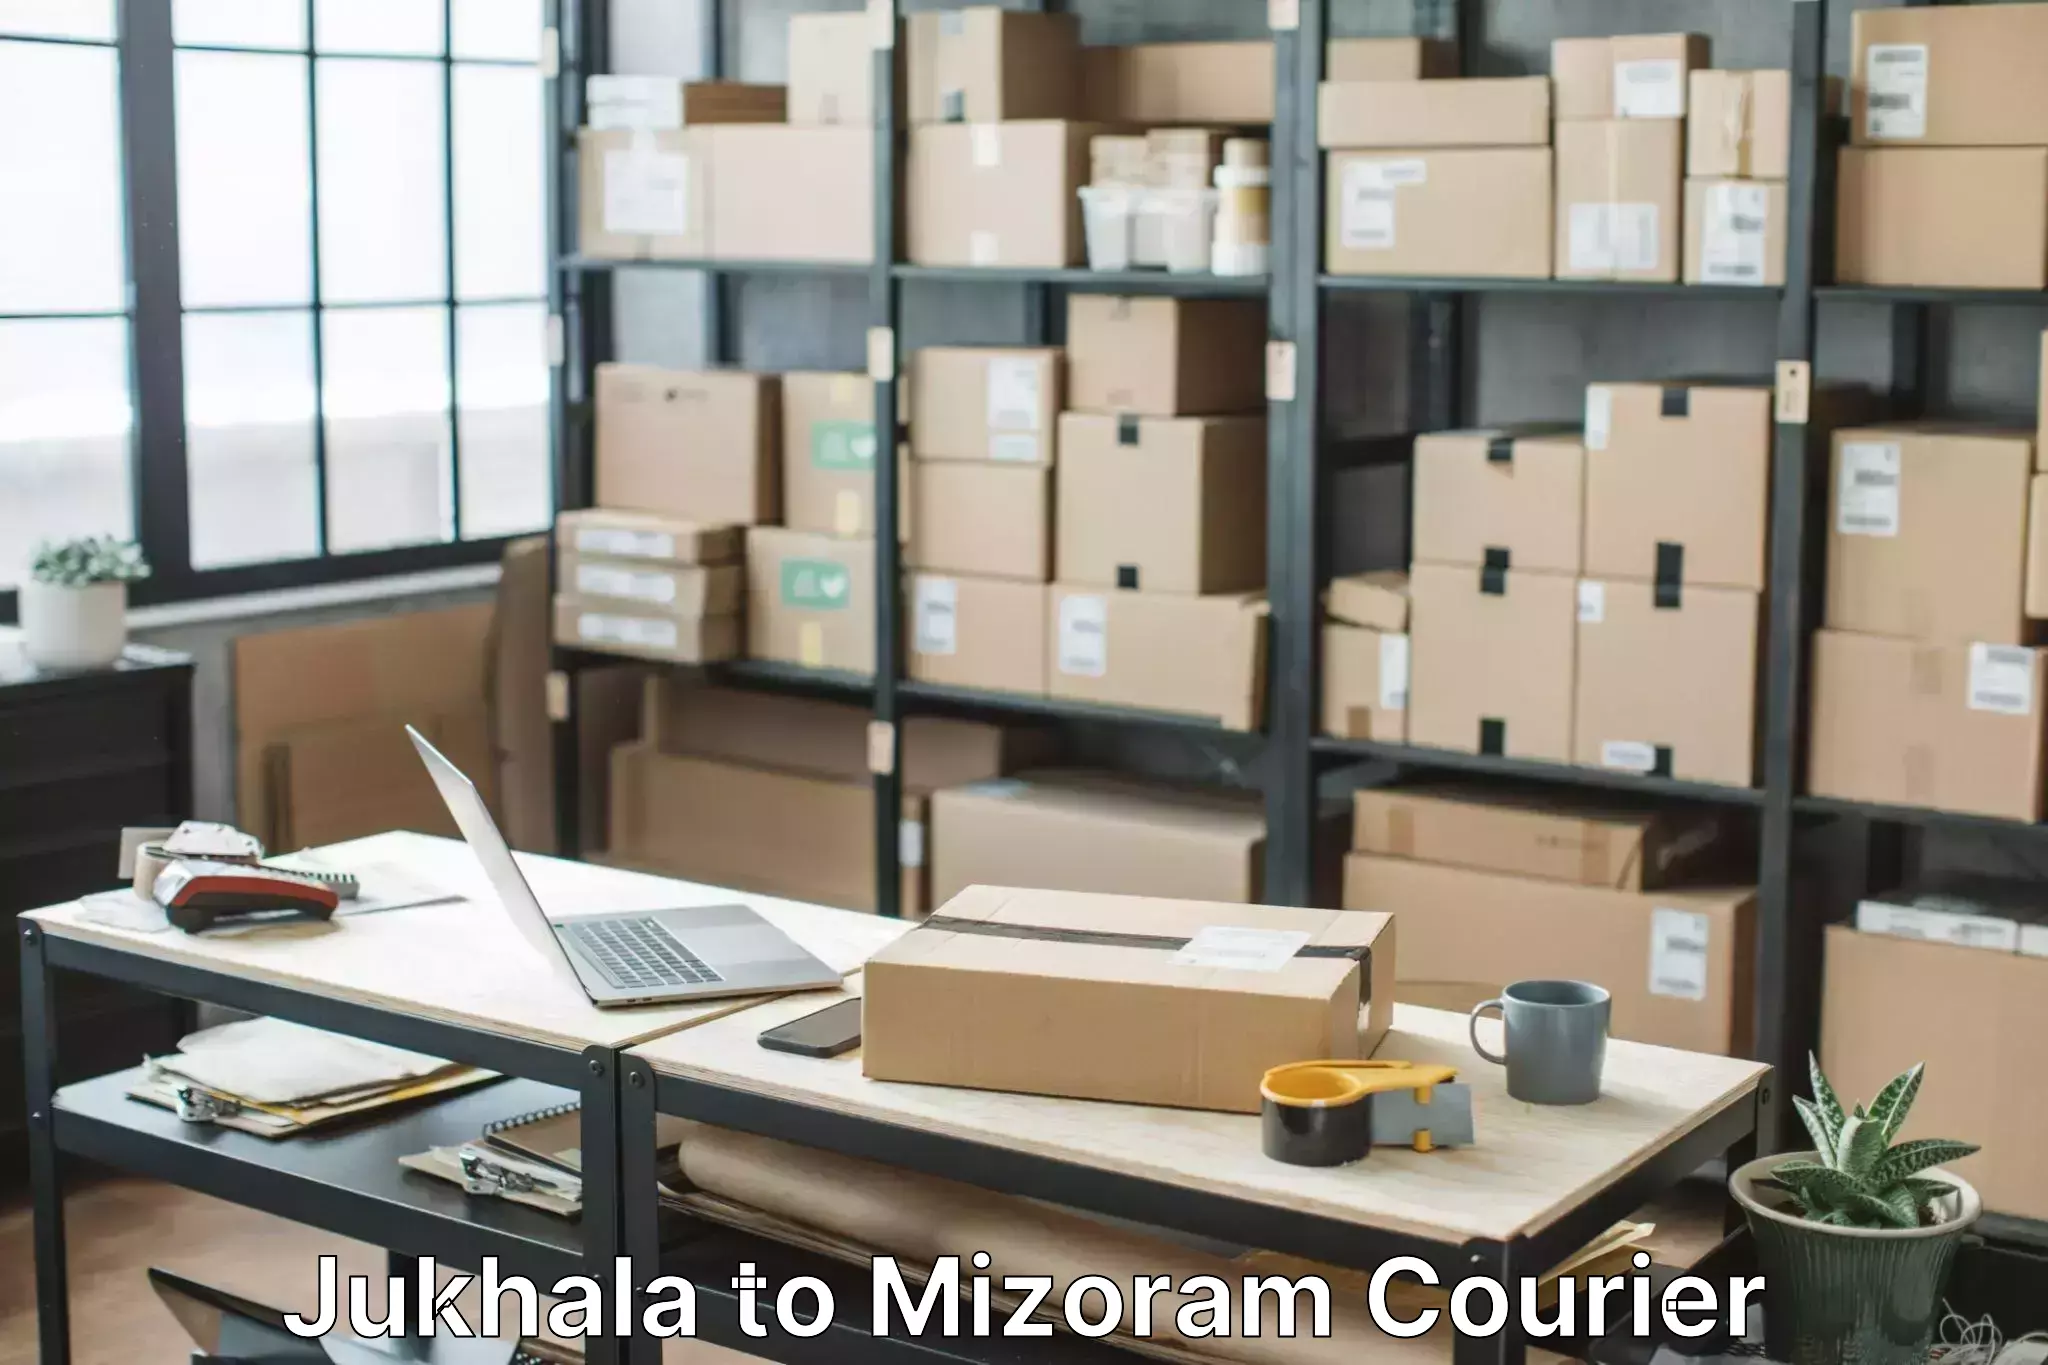 Personalized moving service Jukhala to Mizoram